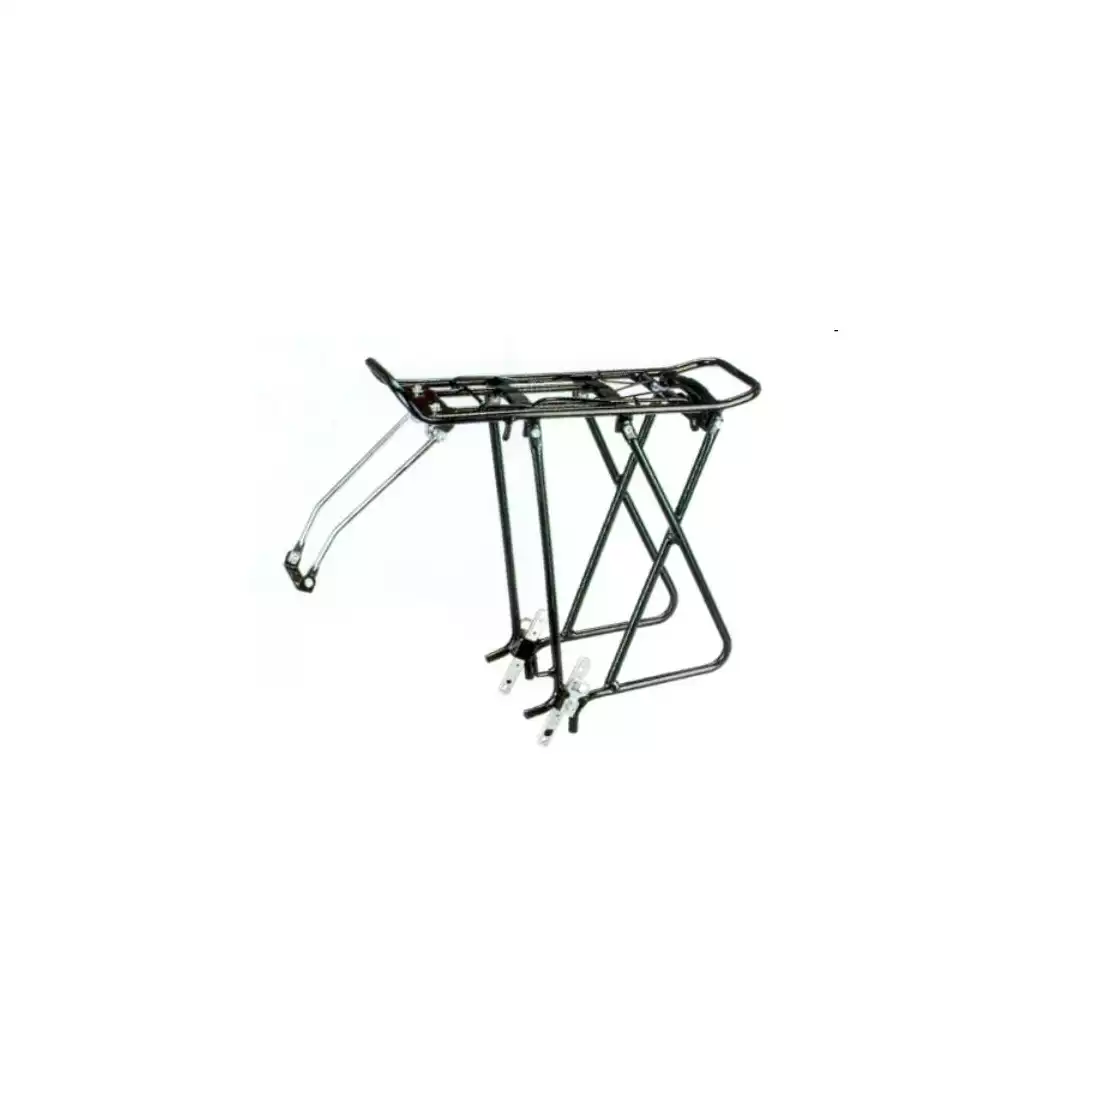 OEM rear bicycle rack 24-28'', black